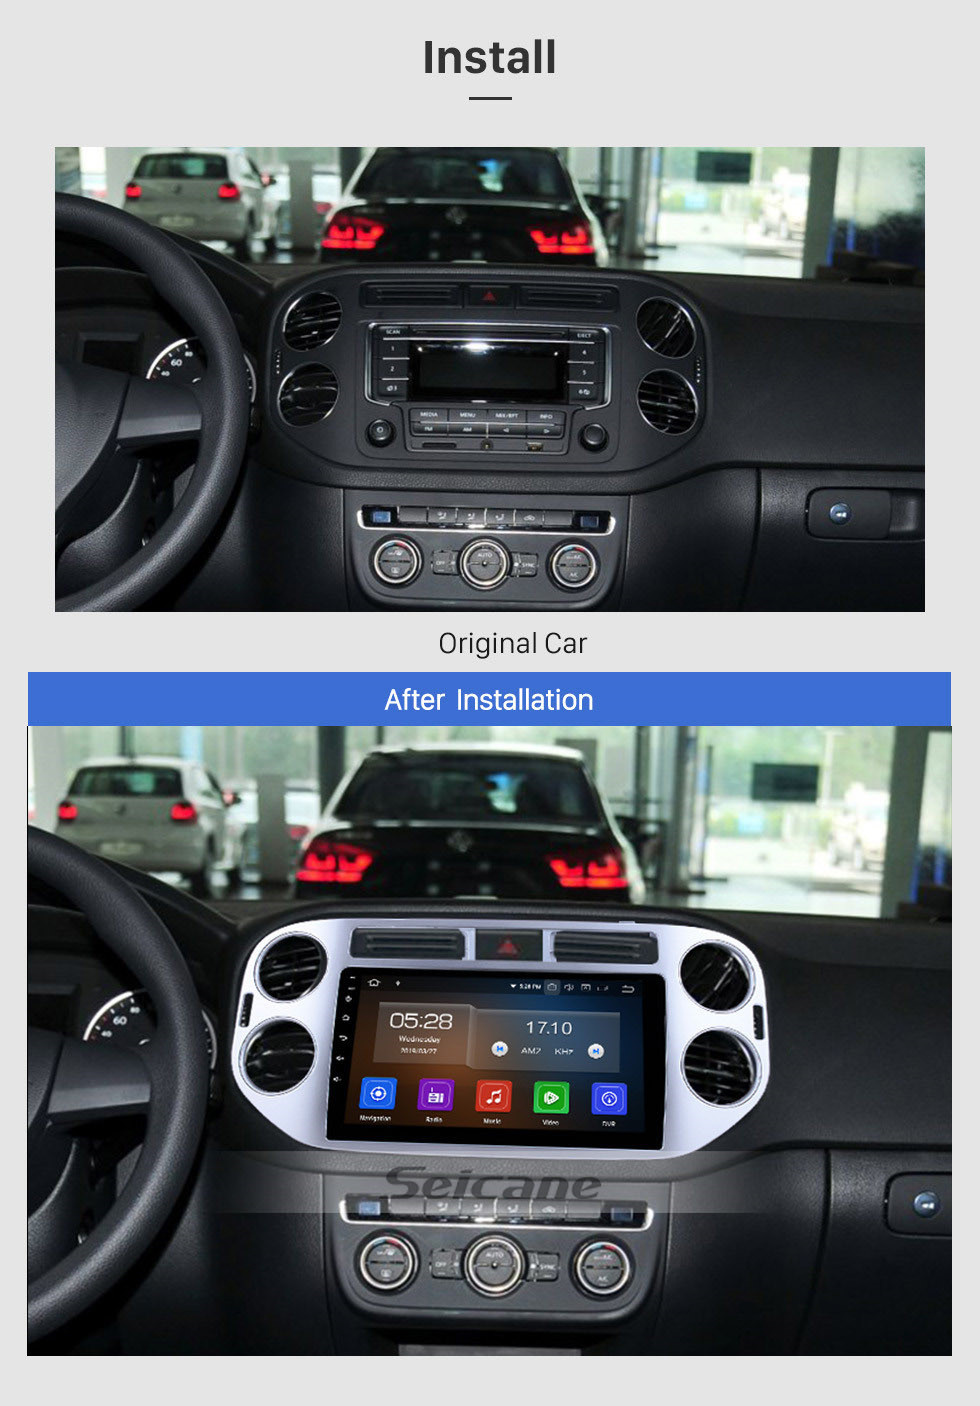 Seicane 9 pouces Android 12.0 Radio Bluetooth pour 2010 2011 2012 2013 2014 2015 VW Volkswagen Tiguan WiFi Système de navigation GPS Écran tactile Bluetooth TPMS DVR OBD II Caméra arrière AUX USB Carplay